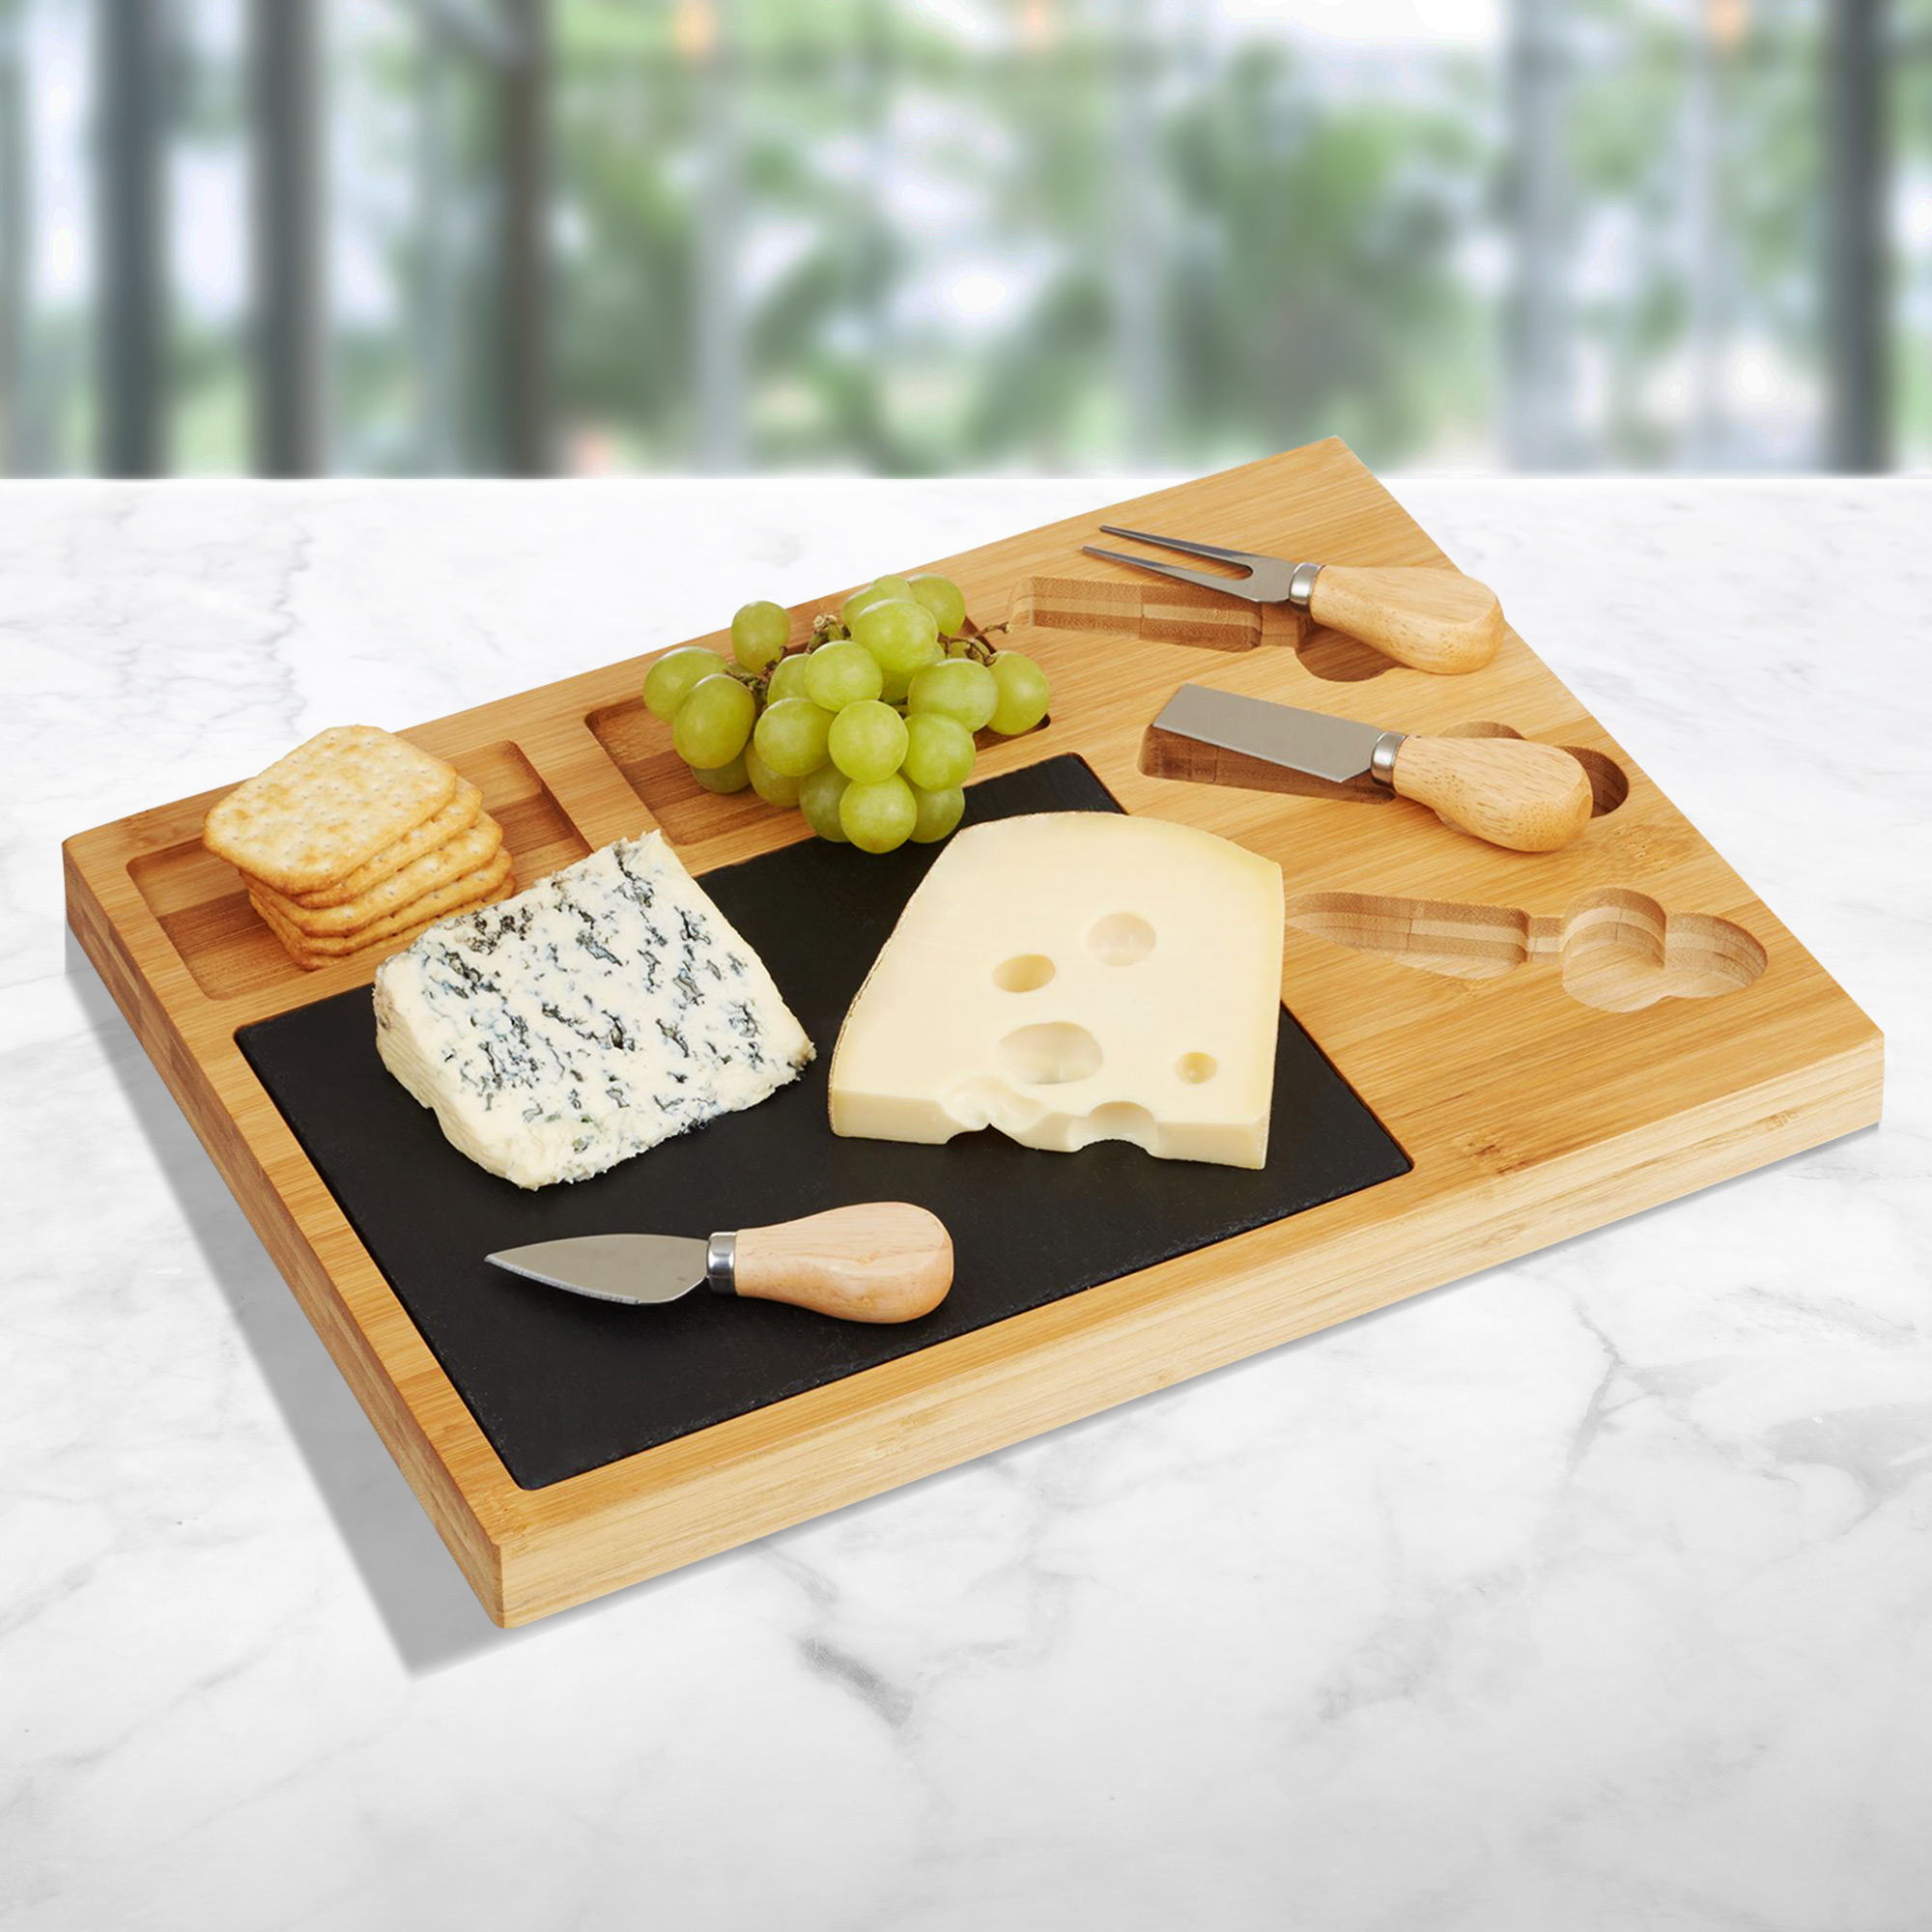 Käsemesser Set mit Käseplatte, Käseset mit Messern und Servierbrett, Charcuterieplatte als Käseschneidebrett, Service Set inklusive Käsemessern